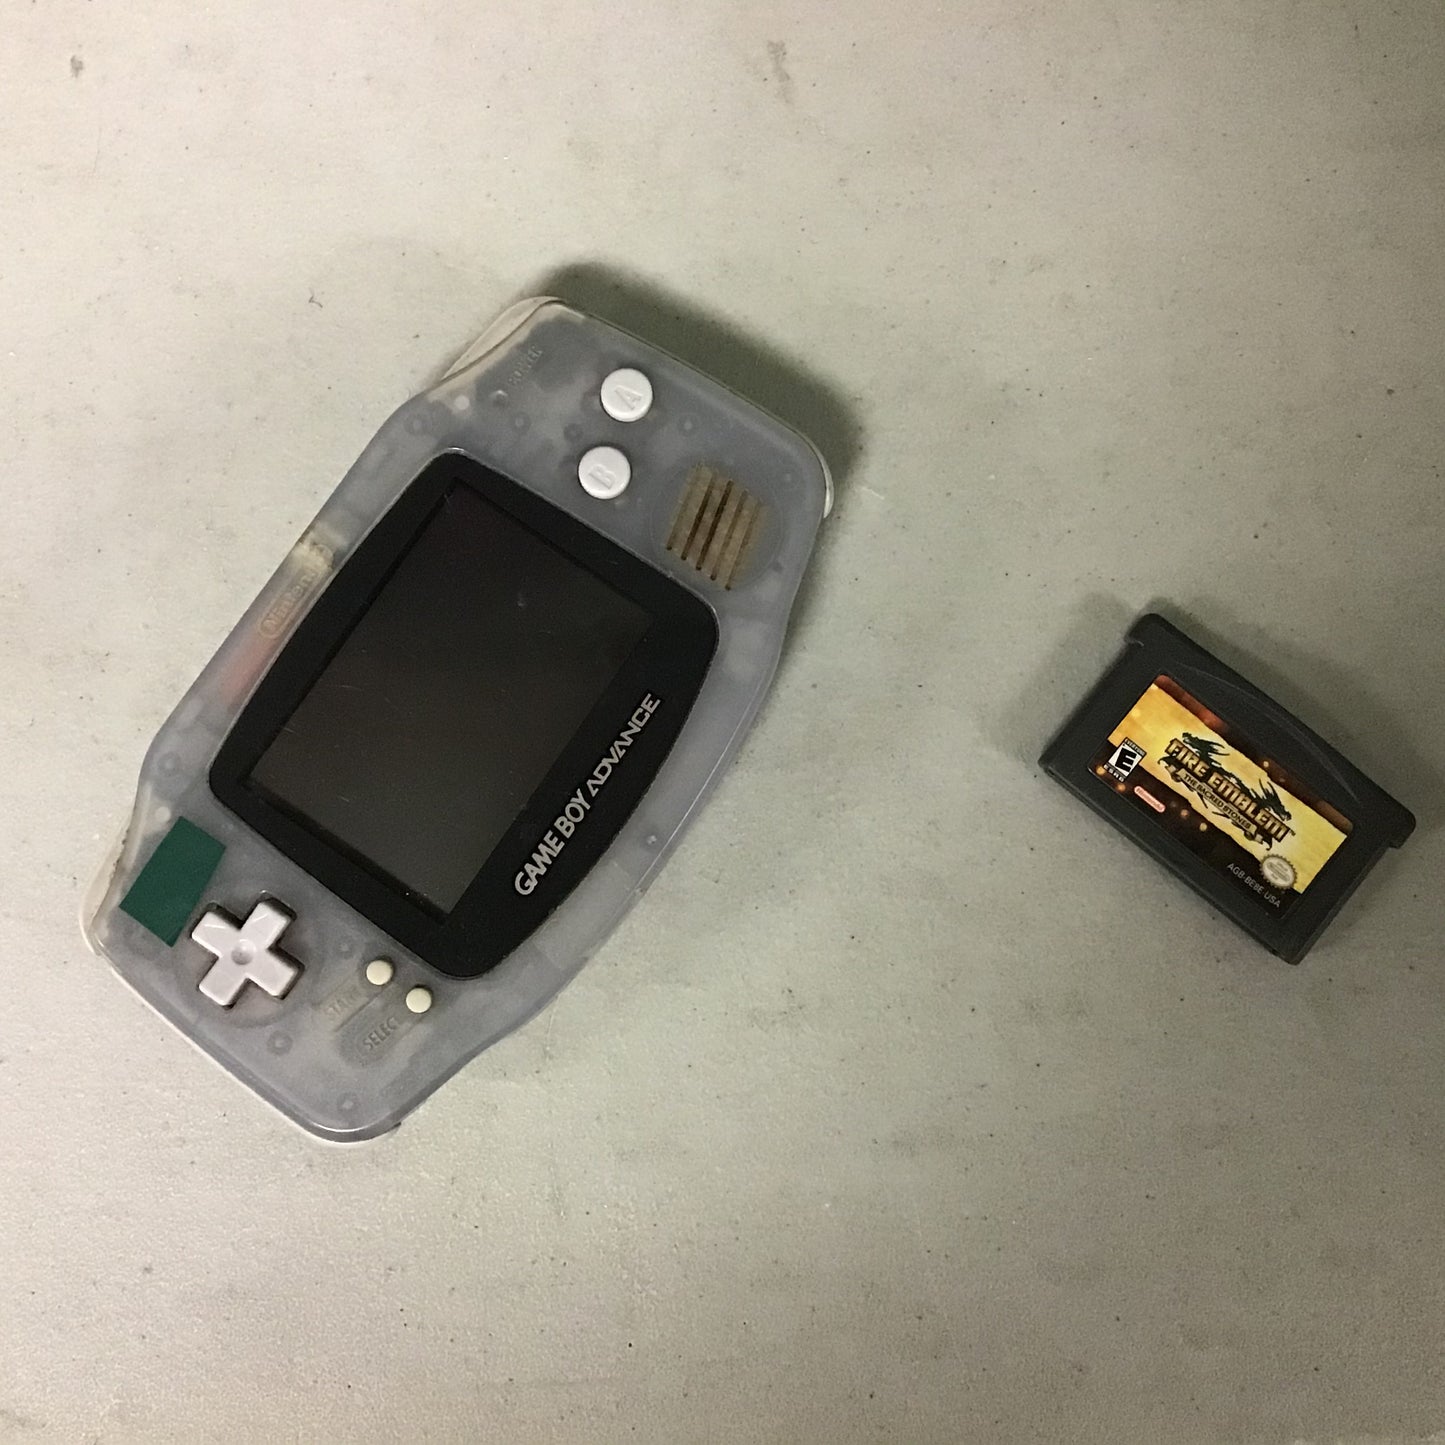 Game Boy Advance + 1 Game